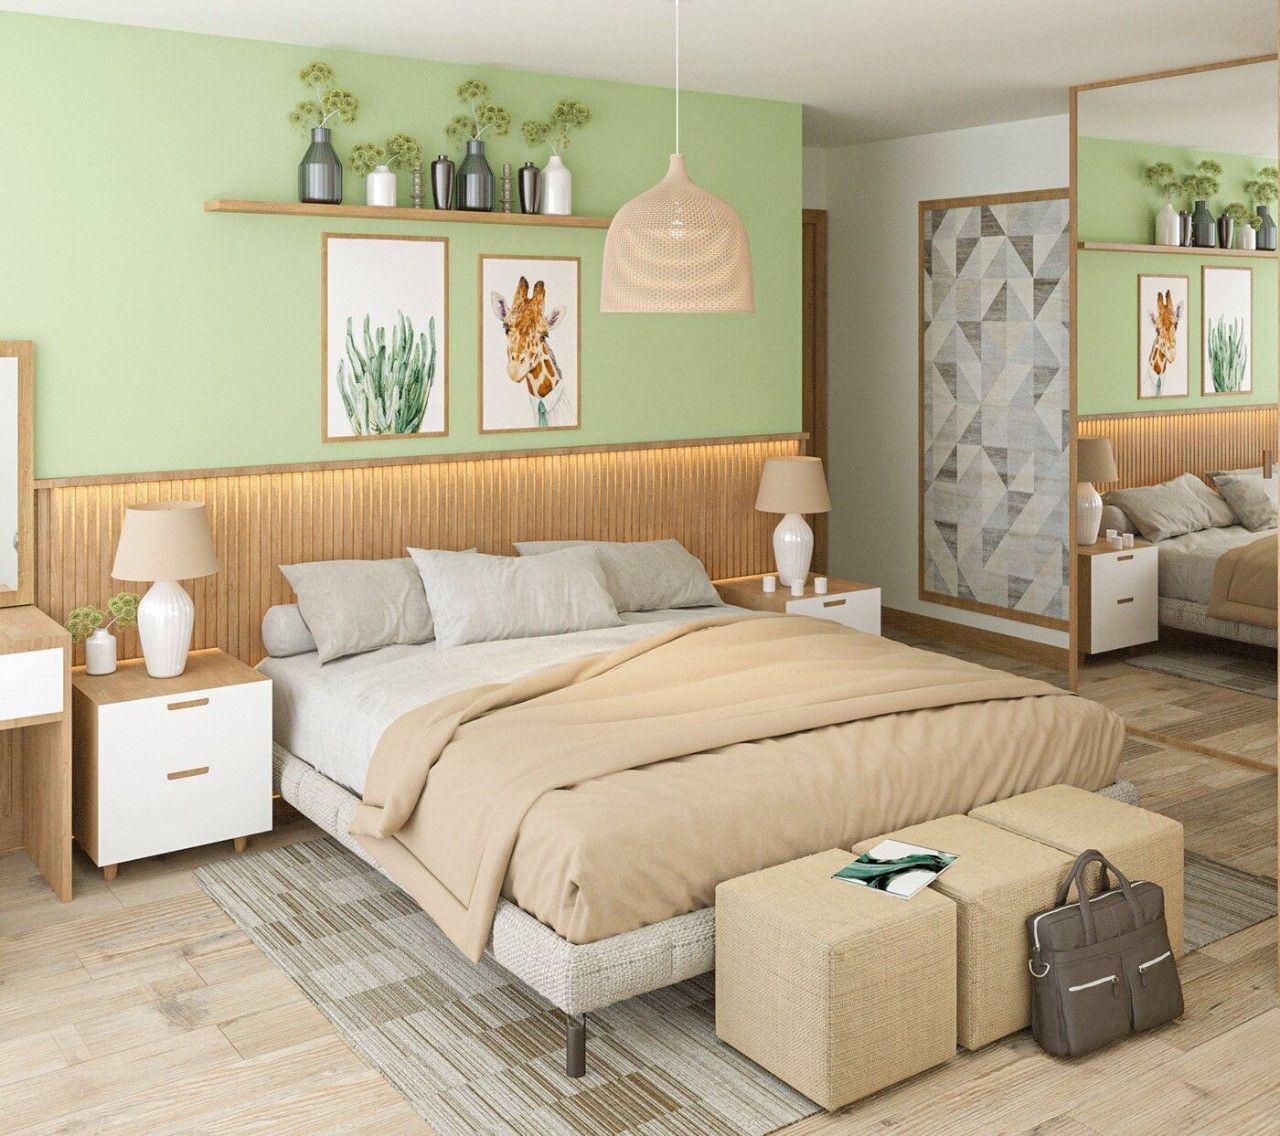 Phòng ngủ sơn xanh mint nhẹ nhàng hiện đại mang lại cảm giác thoải mái 